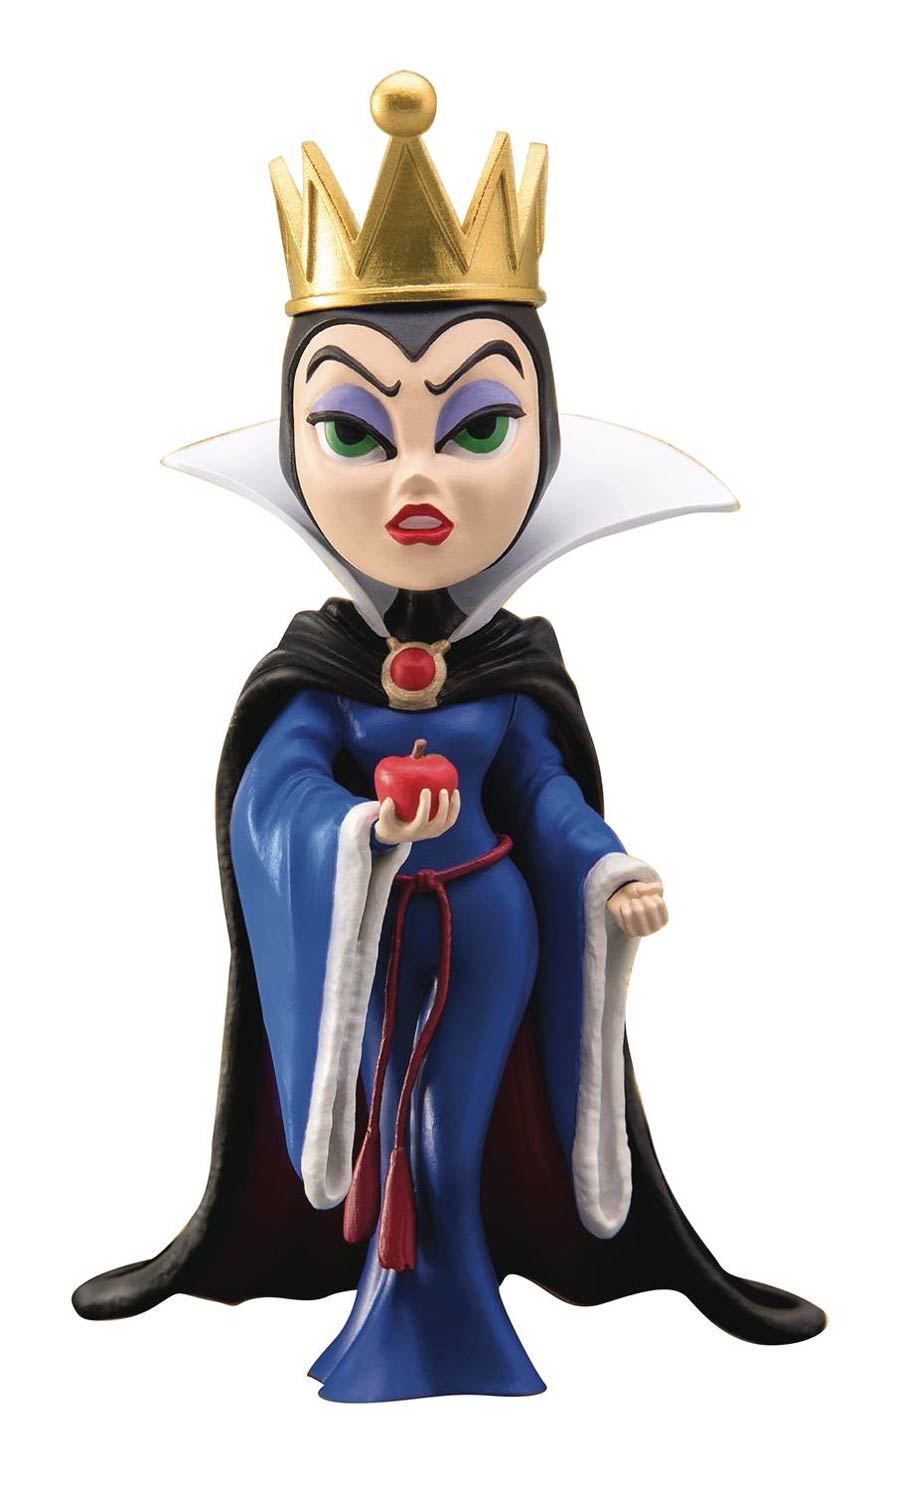 Disney Villains MEA-007 Evil Queen Previews Exclusive Figure